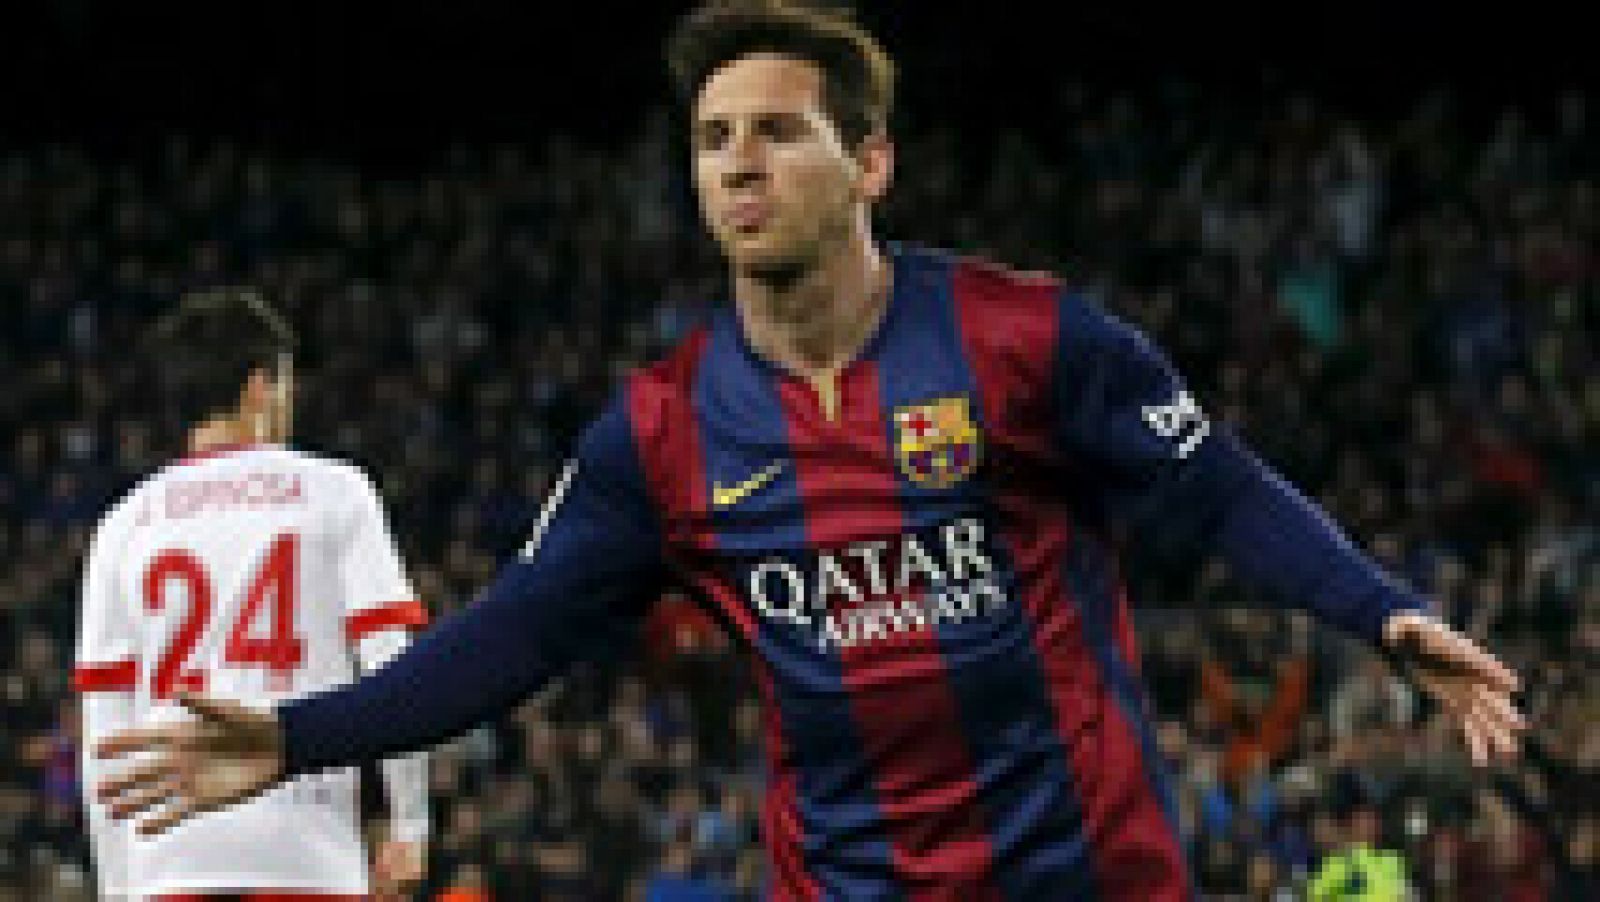 El Barcelona ha sumado tres puntos más en su lucha por la Liga con una goleada al Almería, al que han derrotado 4-0 con tantos de Messi, Bartra y doblete de Suárez.